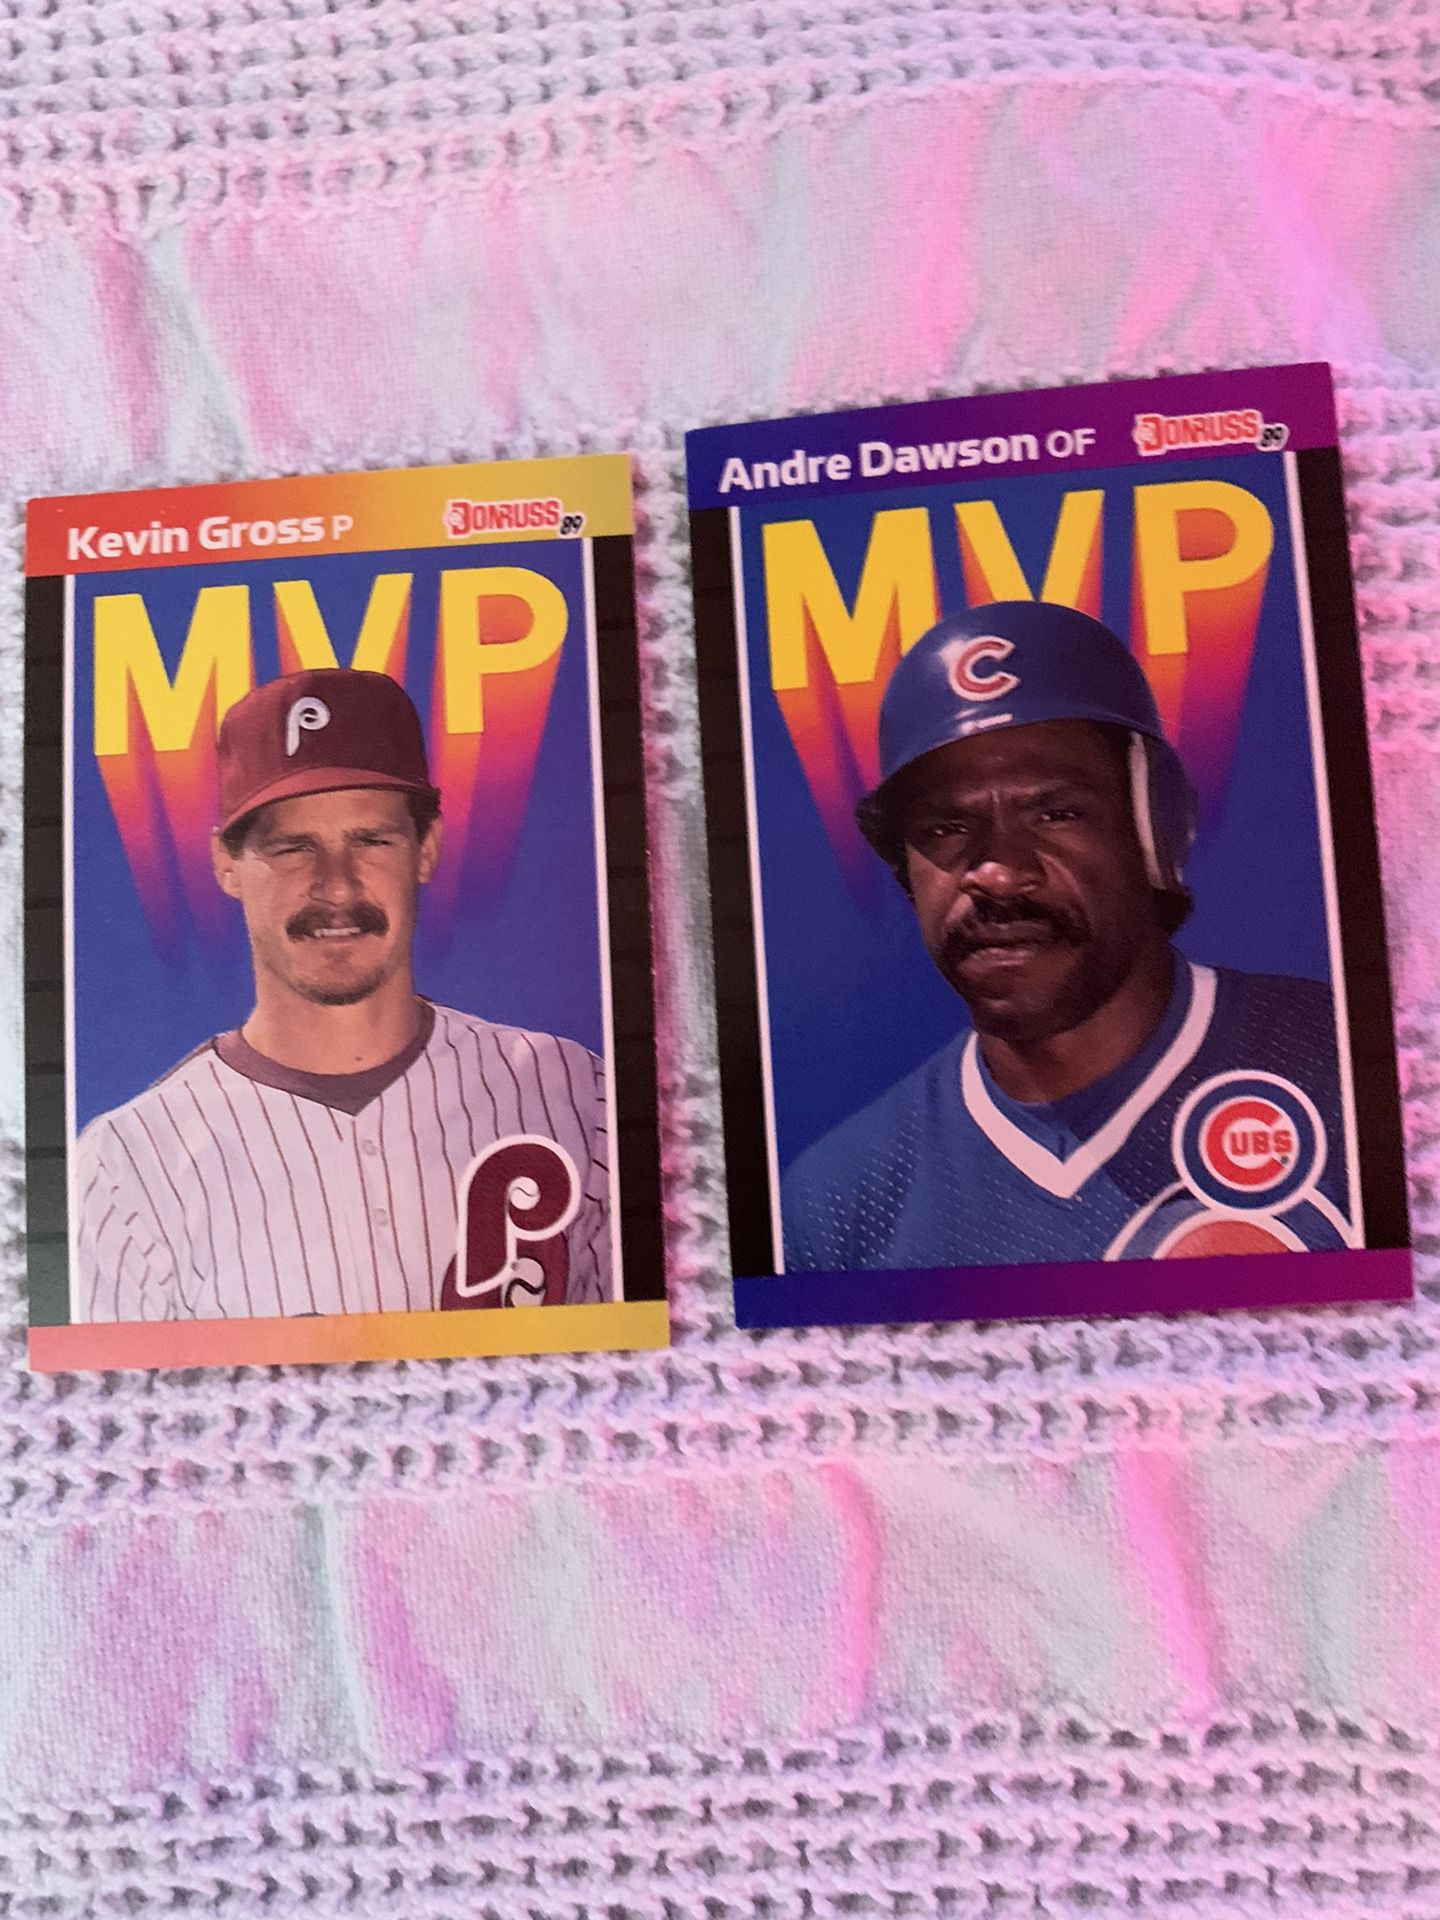 Donross 1988 MVP Baseball Cards